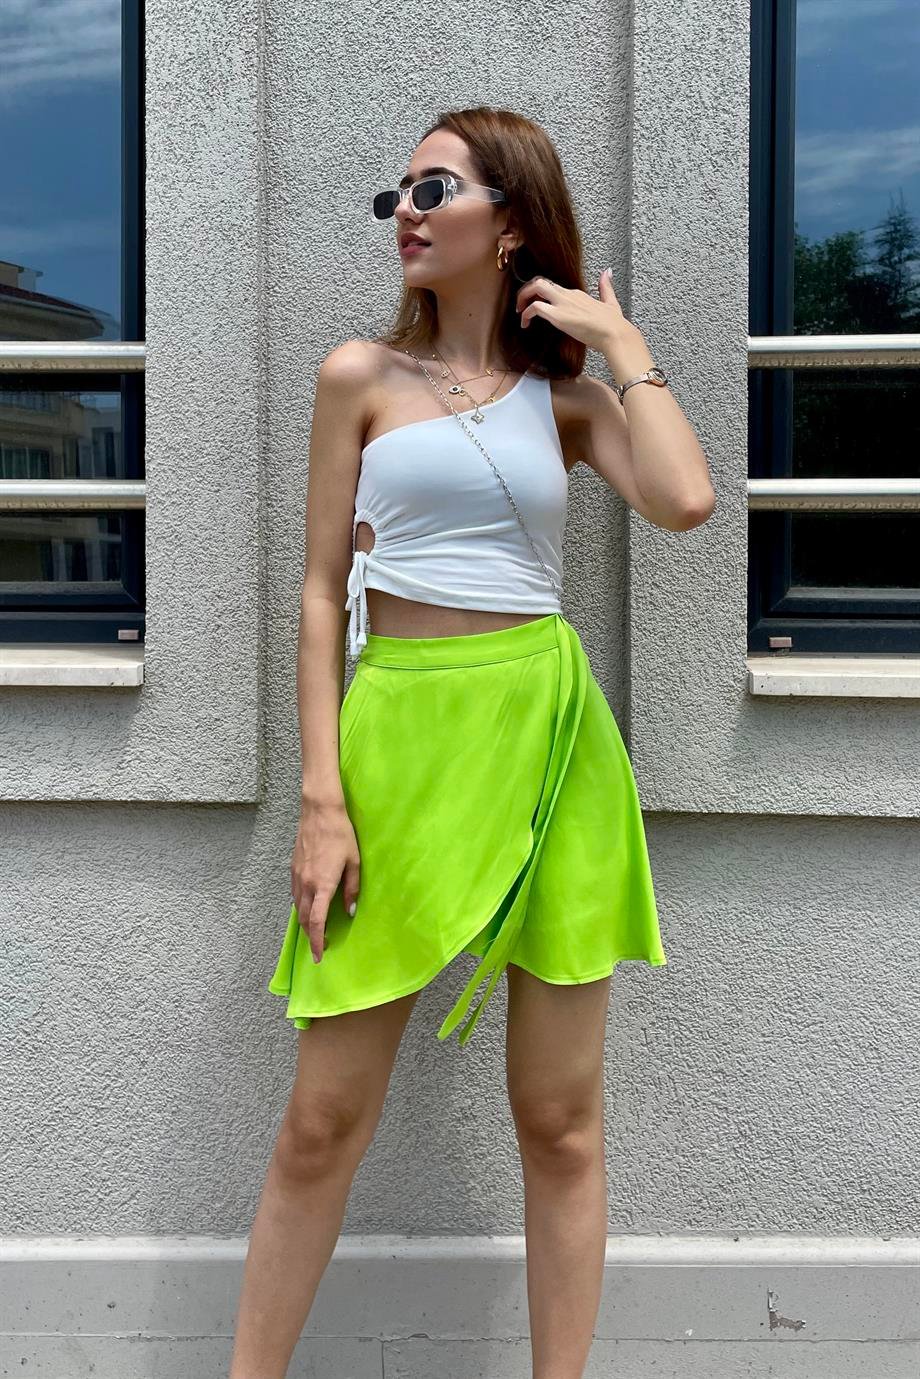 Fıstık Yeşili Saten Mini Etek - Kadın Etek Modelleri - Nazliye Moda | Kadın  Giyim Modası